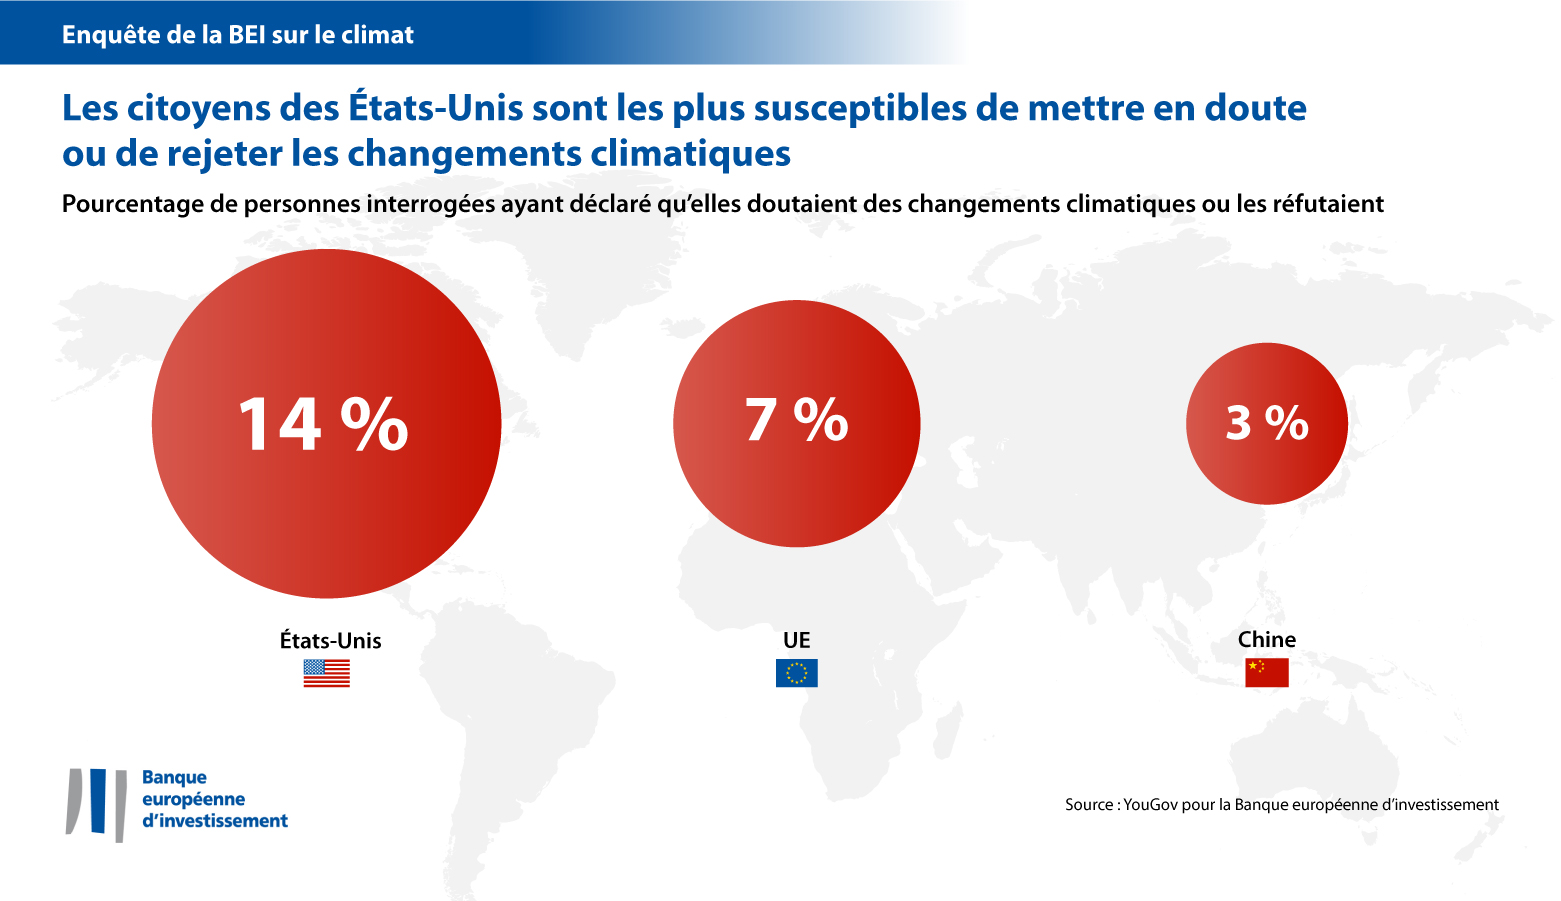 EIB climate survey